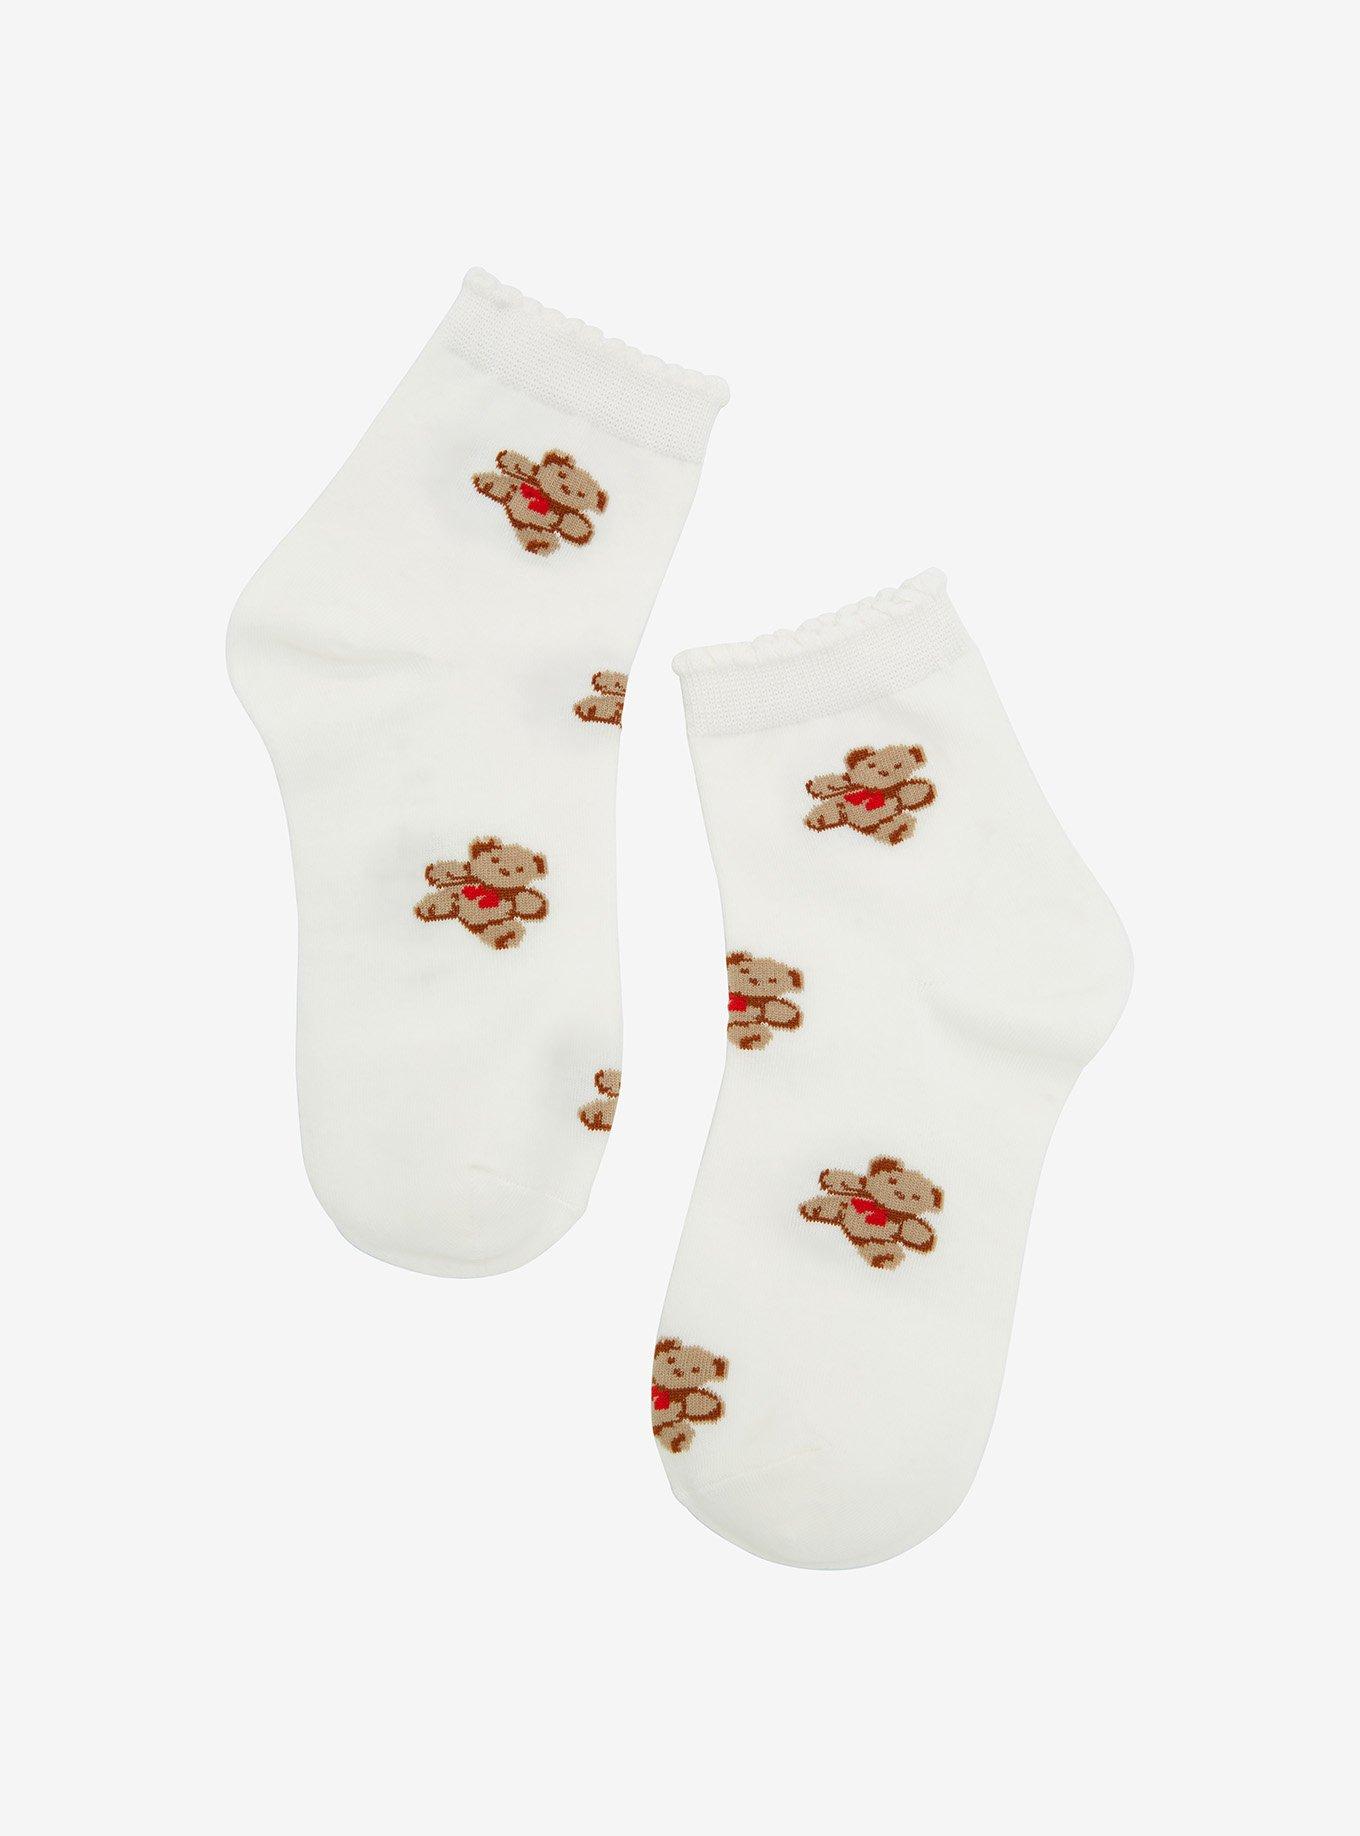 Bow Tie Teddy Bear Ruffle Ankle Socks, , hi-res